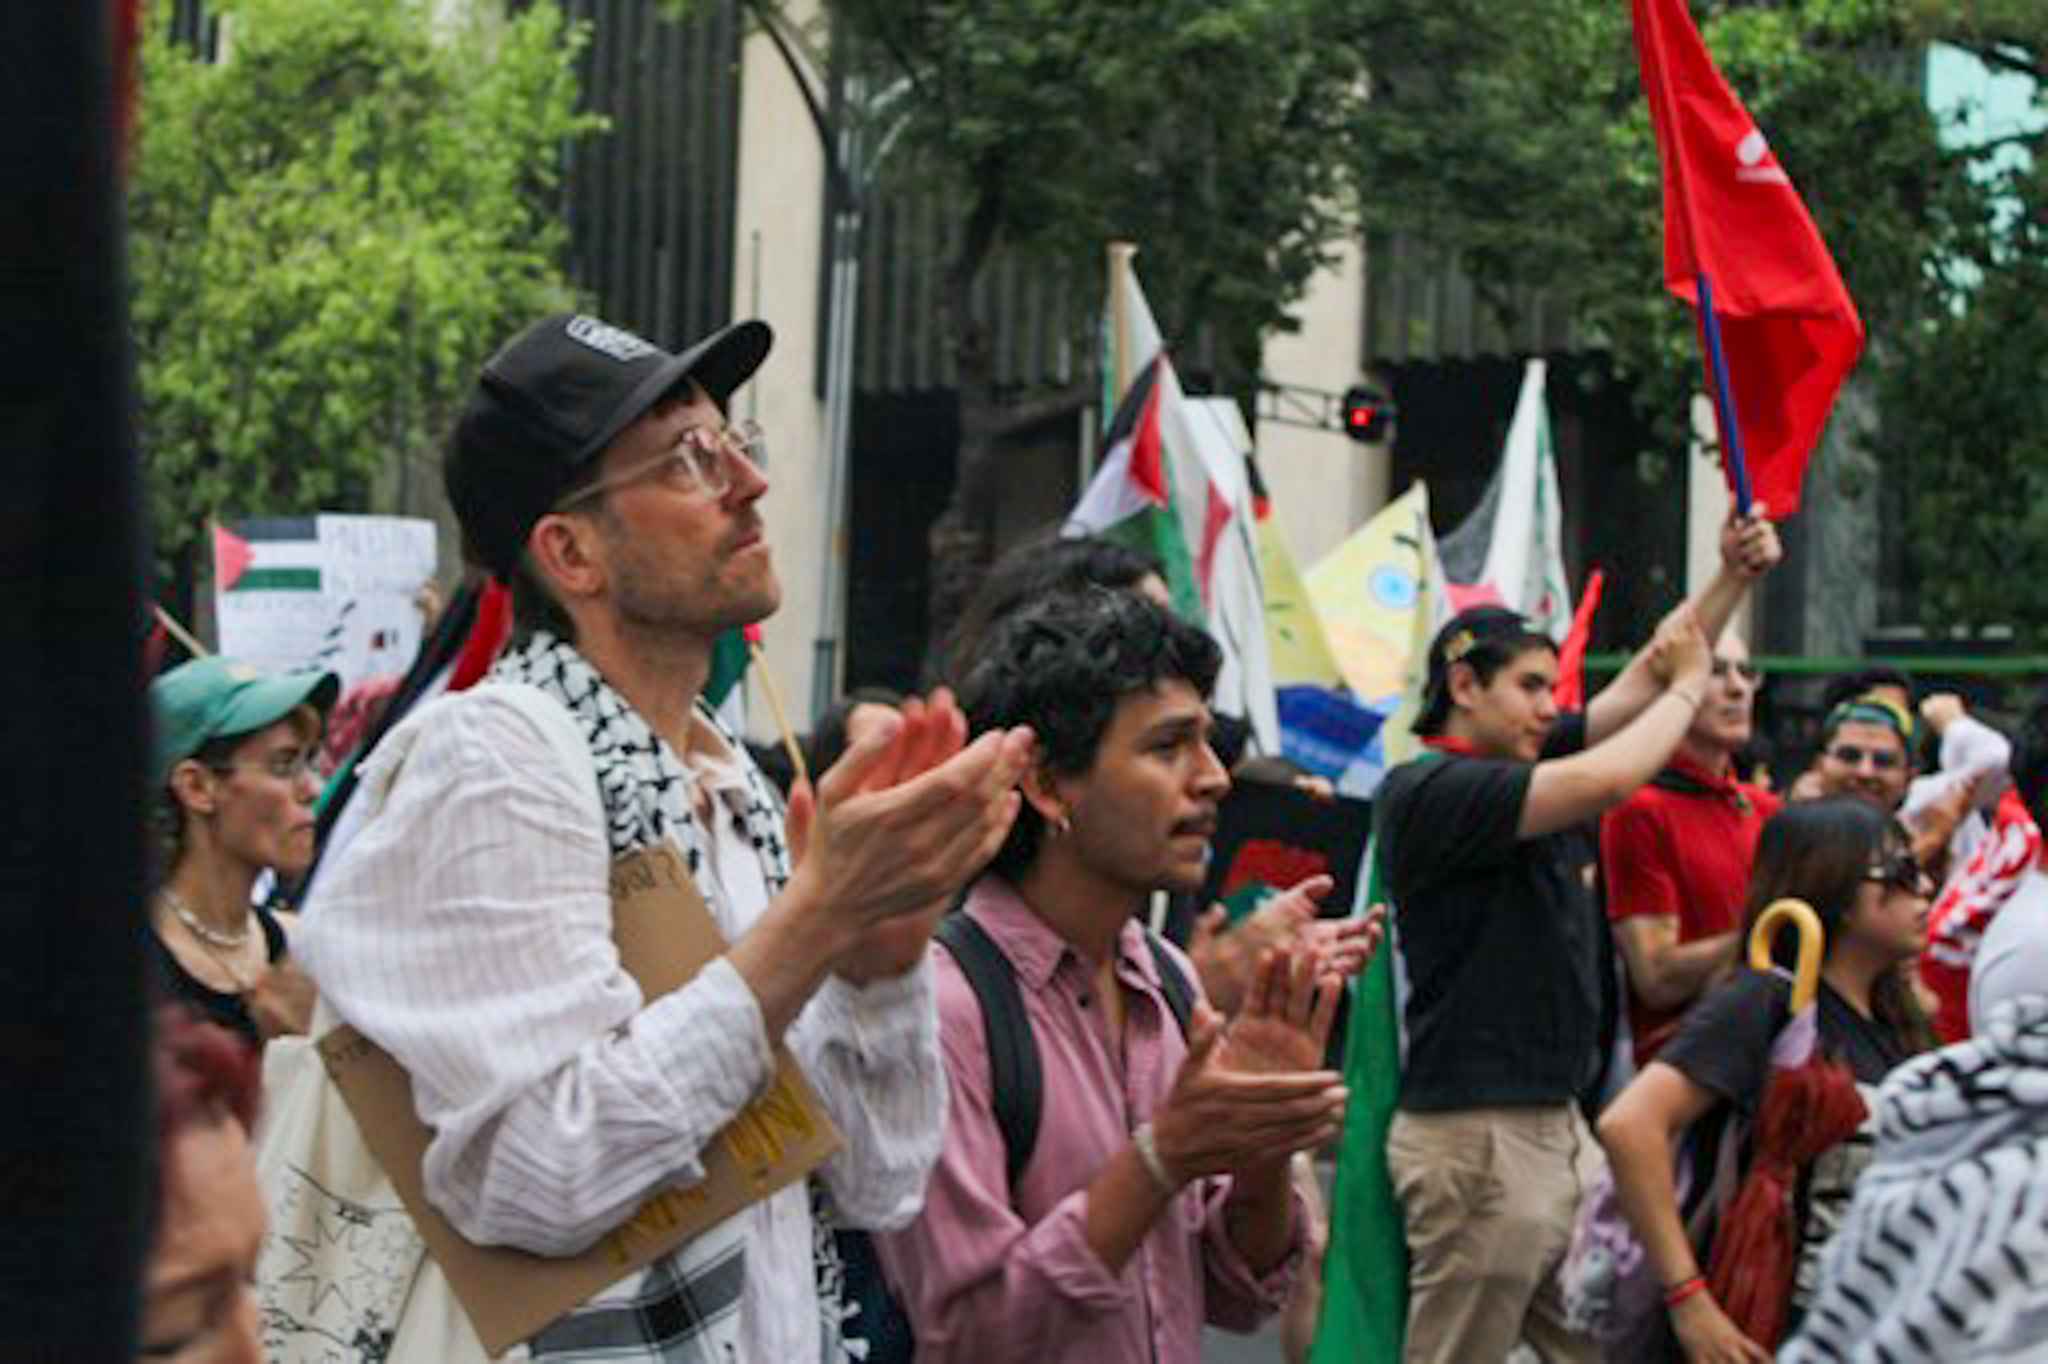 Colectivos realizaron la marcha por el aniversario 76 de la Nakba, que conmemoró la catástrofe del destierro de 700,000 palestinos, en el estado de Israel.